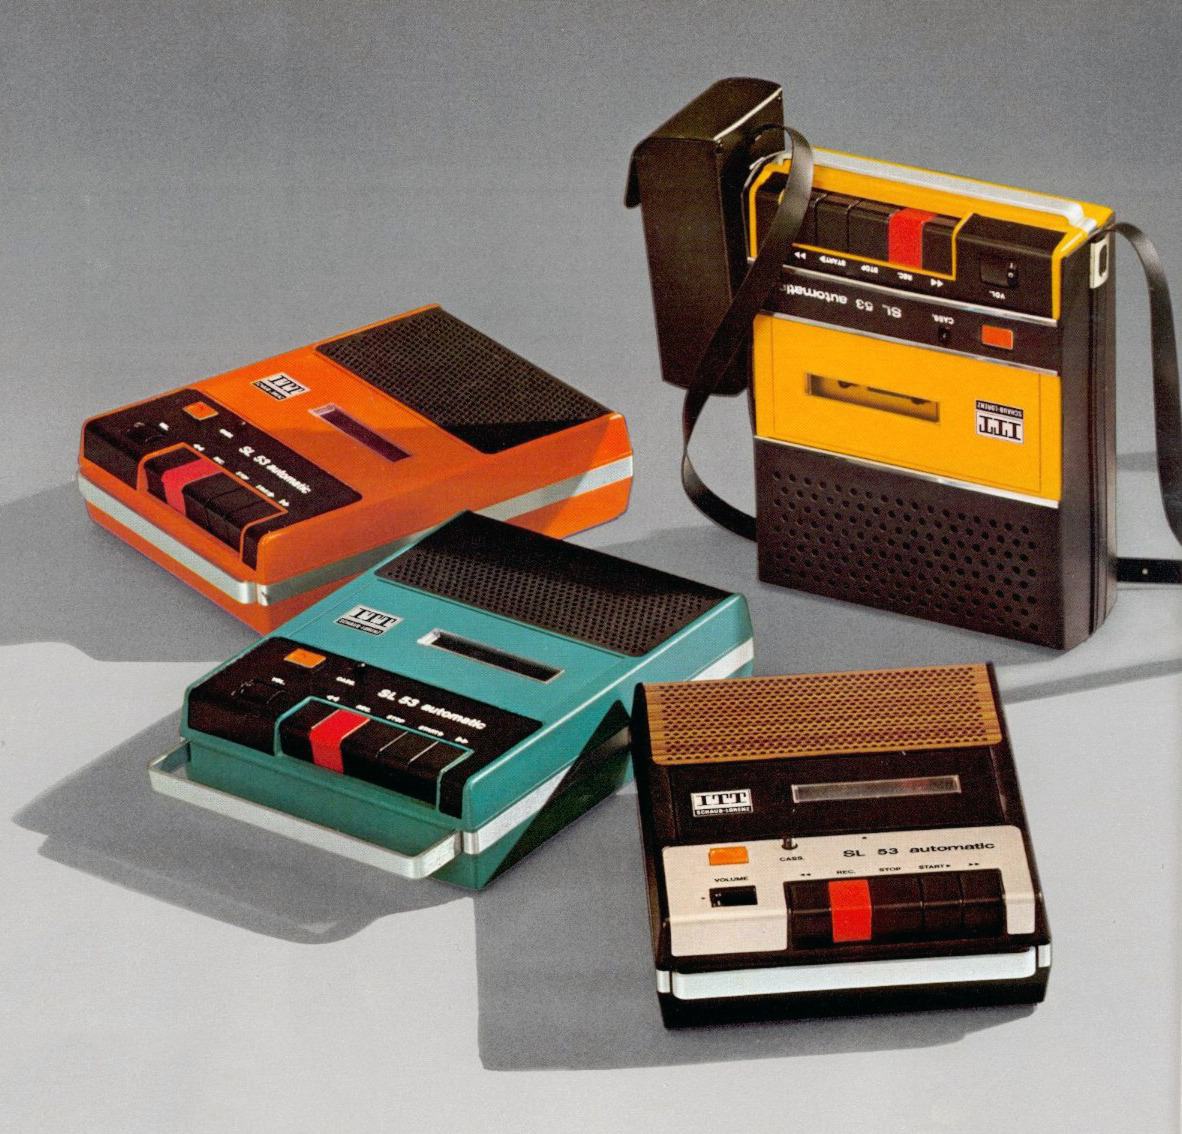 ITT Schaub Lorenz, Cassette recorder, 1973. ITT Corp., USA.